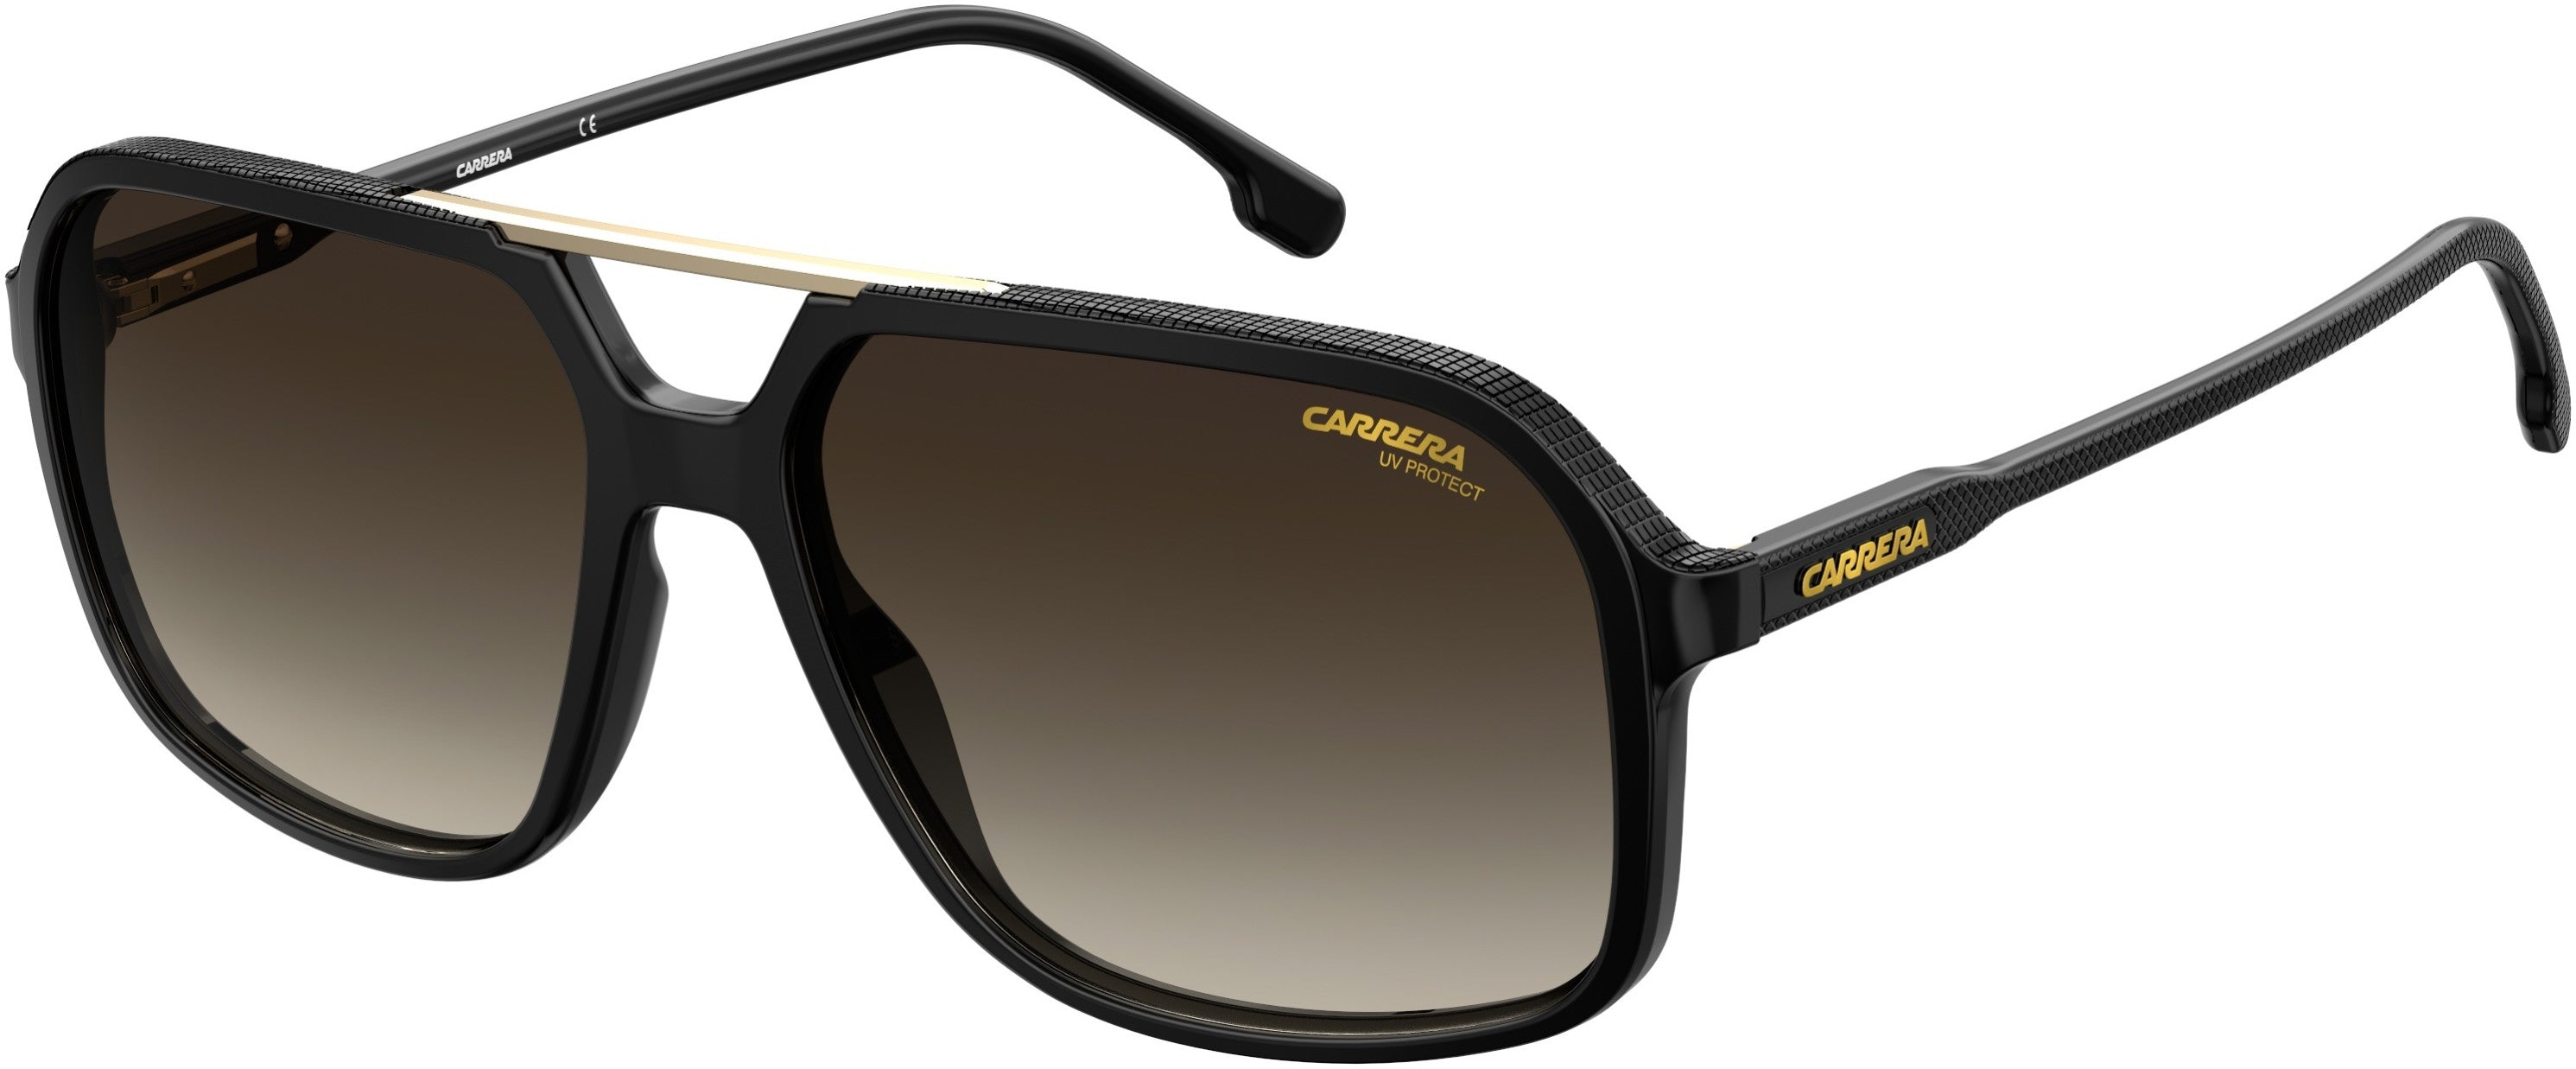  Carrera 229/S Rectangular Sunglasses 0R60-0R60  Black Brown (HA Brown Gradient)